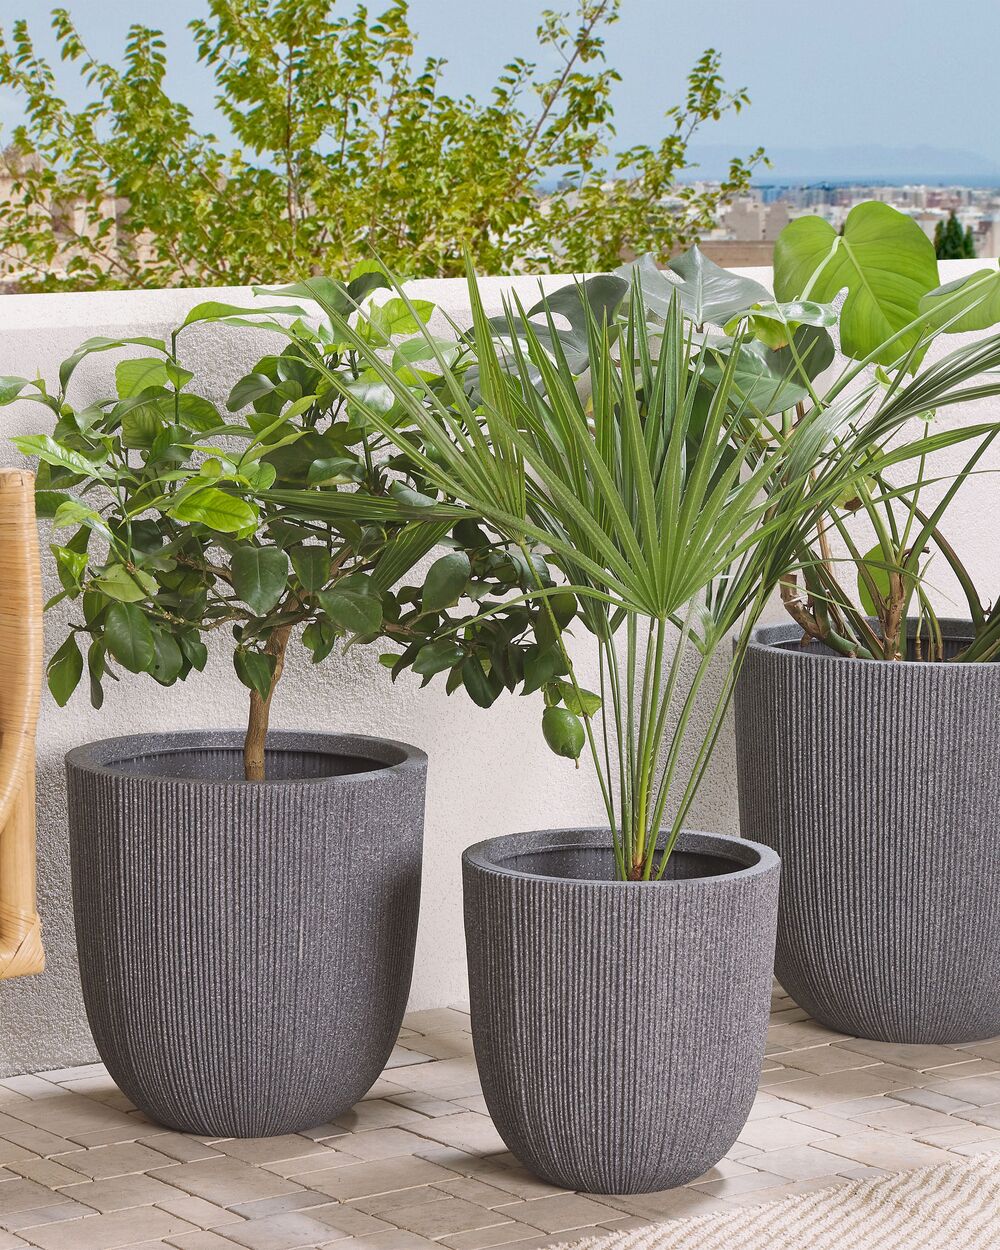 Acquista online vasi per piante da interni in sconto fino al 70